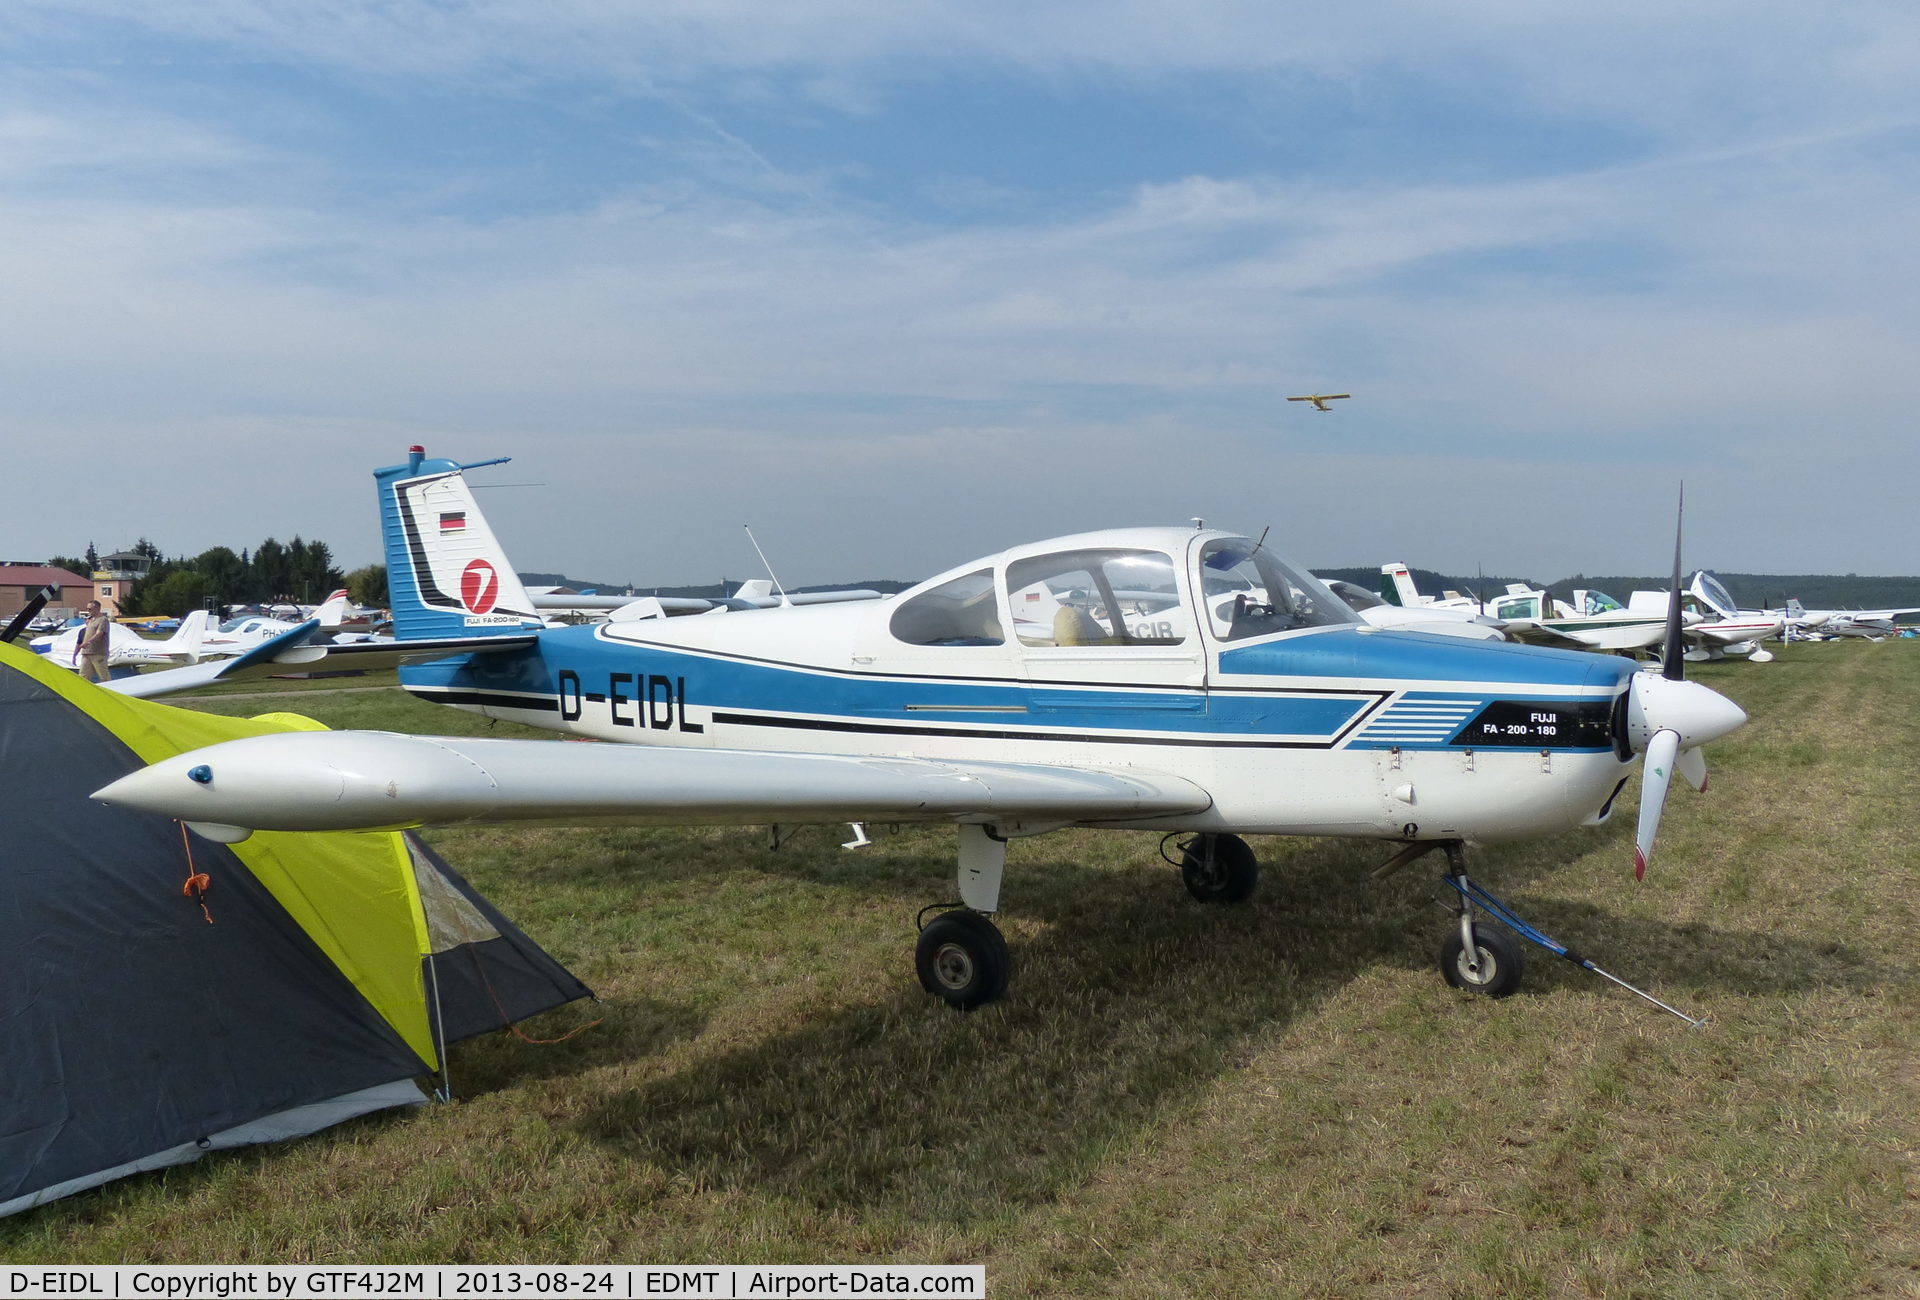 D-EIDL, Fuji FA-200-180 Aero Subaru C/N 206, D-EIDL  at Tannheim 24.8.13